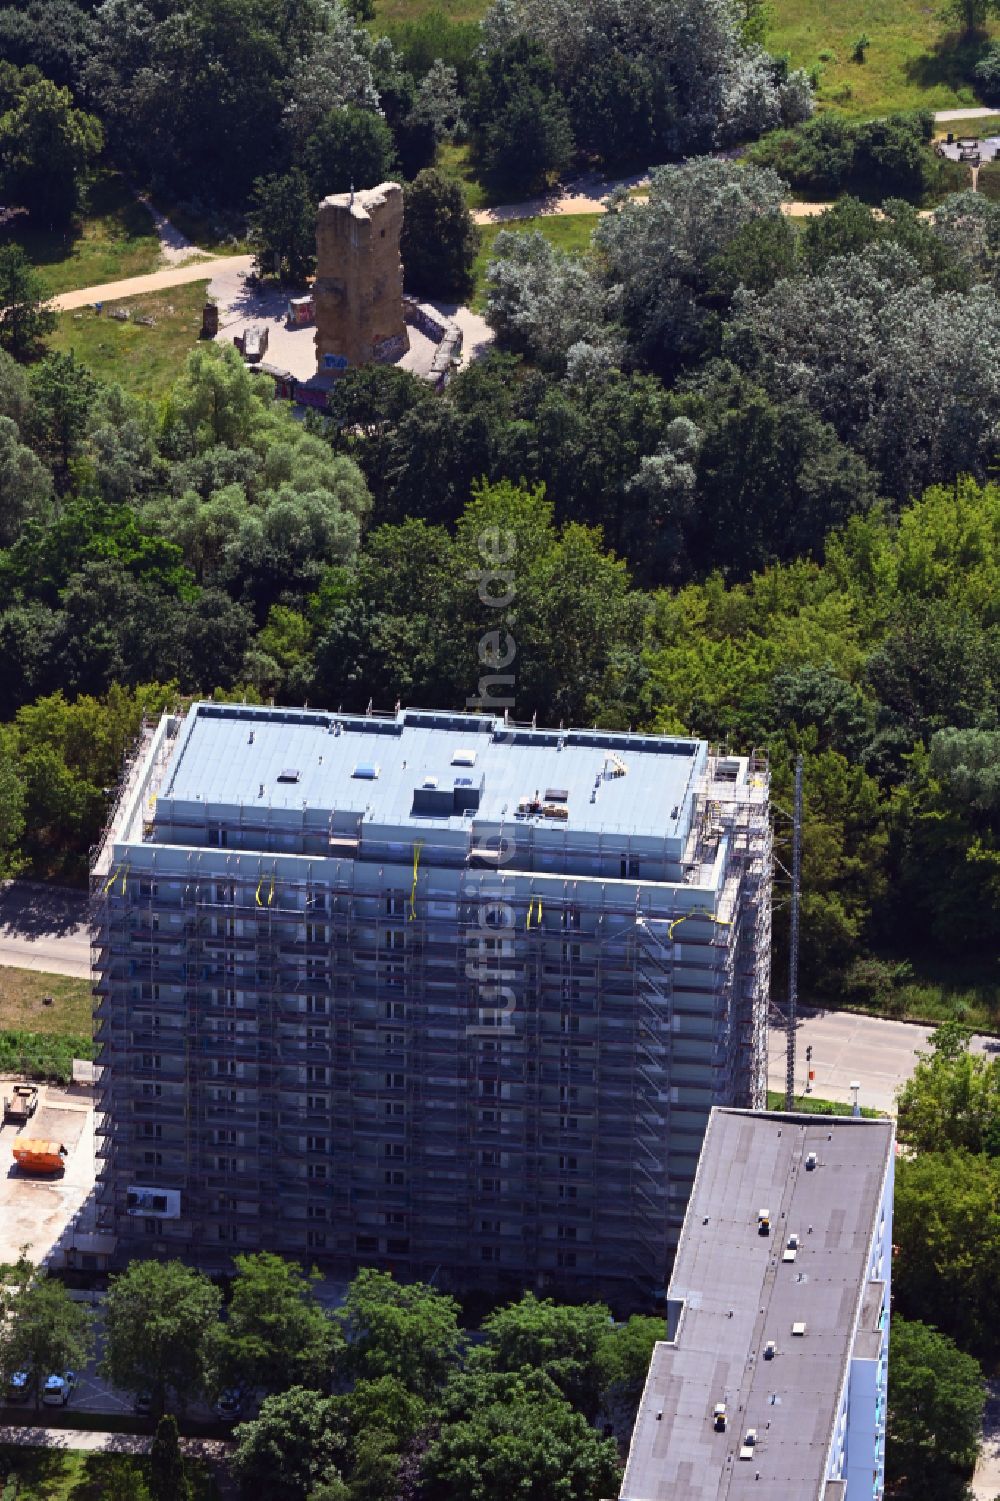 Luftbild Berlin - Baustelle zum Neubau eines Wohnhauses einem ehemaligen Parkplatz im Ortsteil Marzahn in Berlin, Deutschland